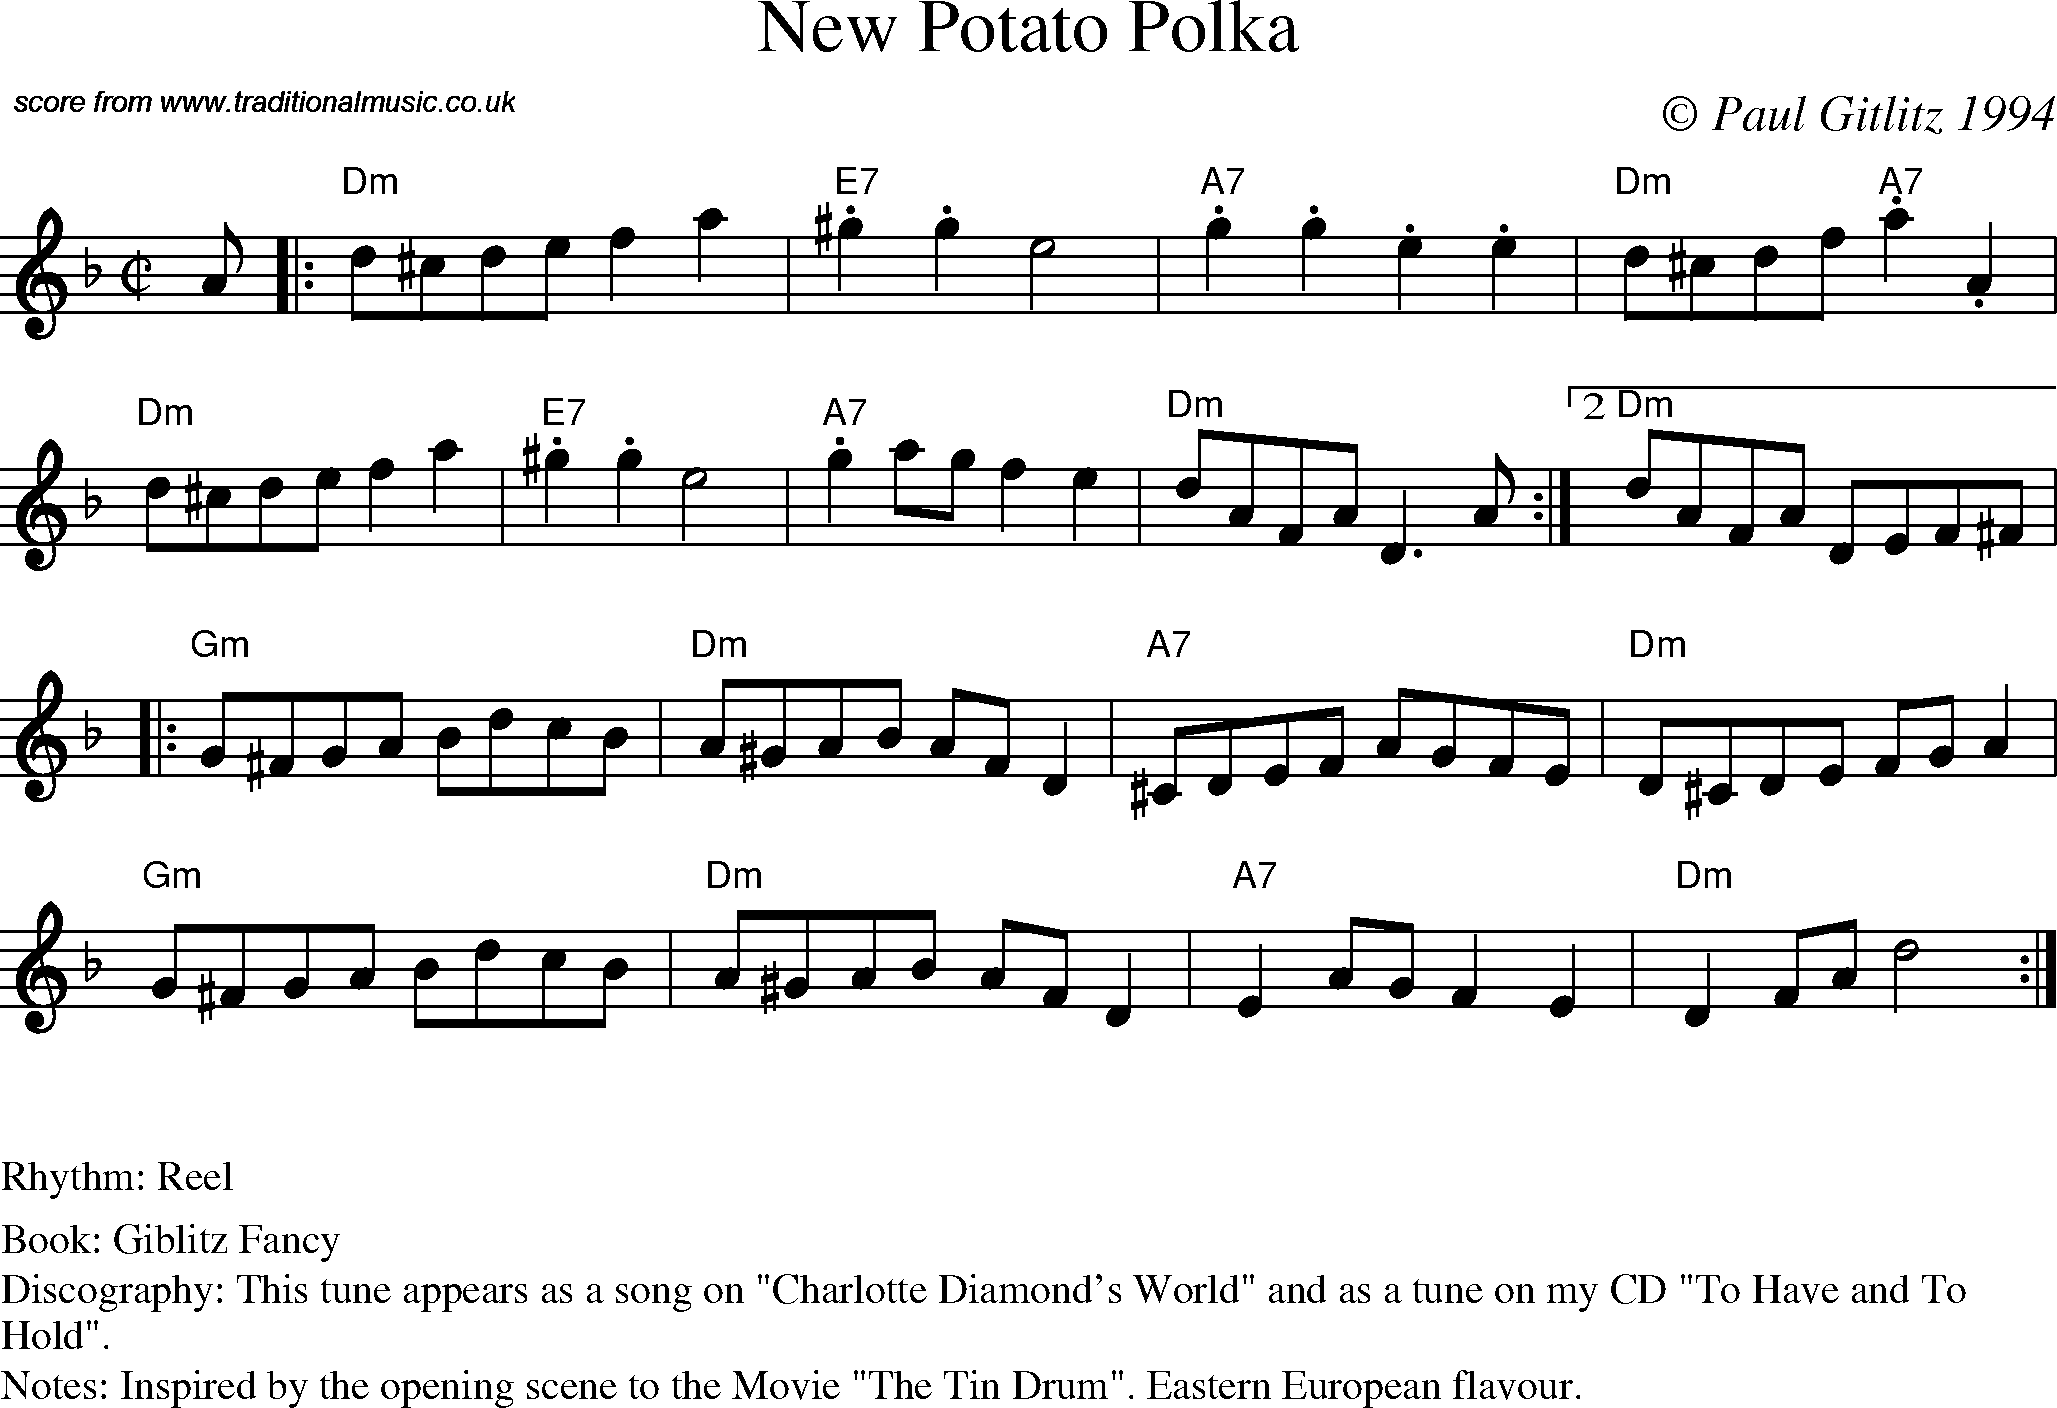 Sheet Music Score for Reel - New Potato Polka